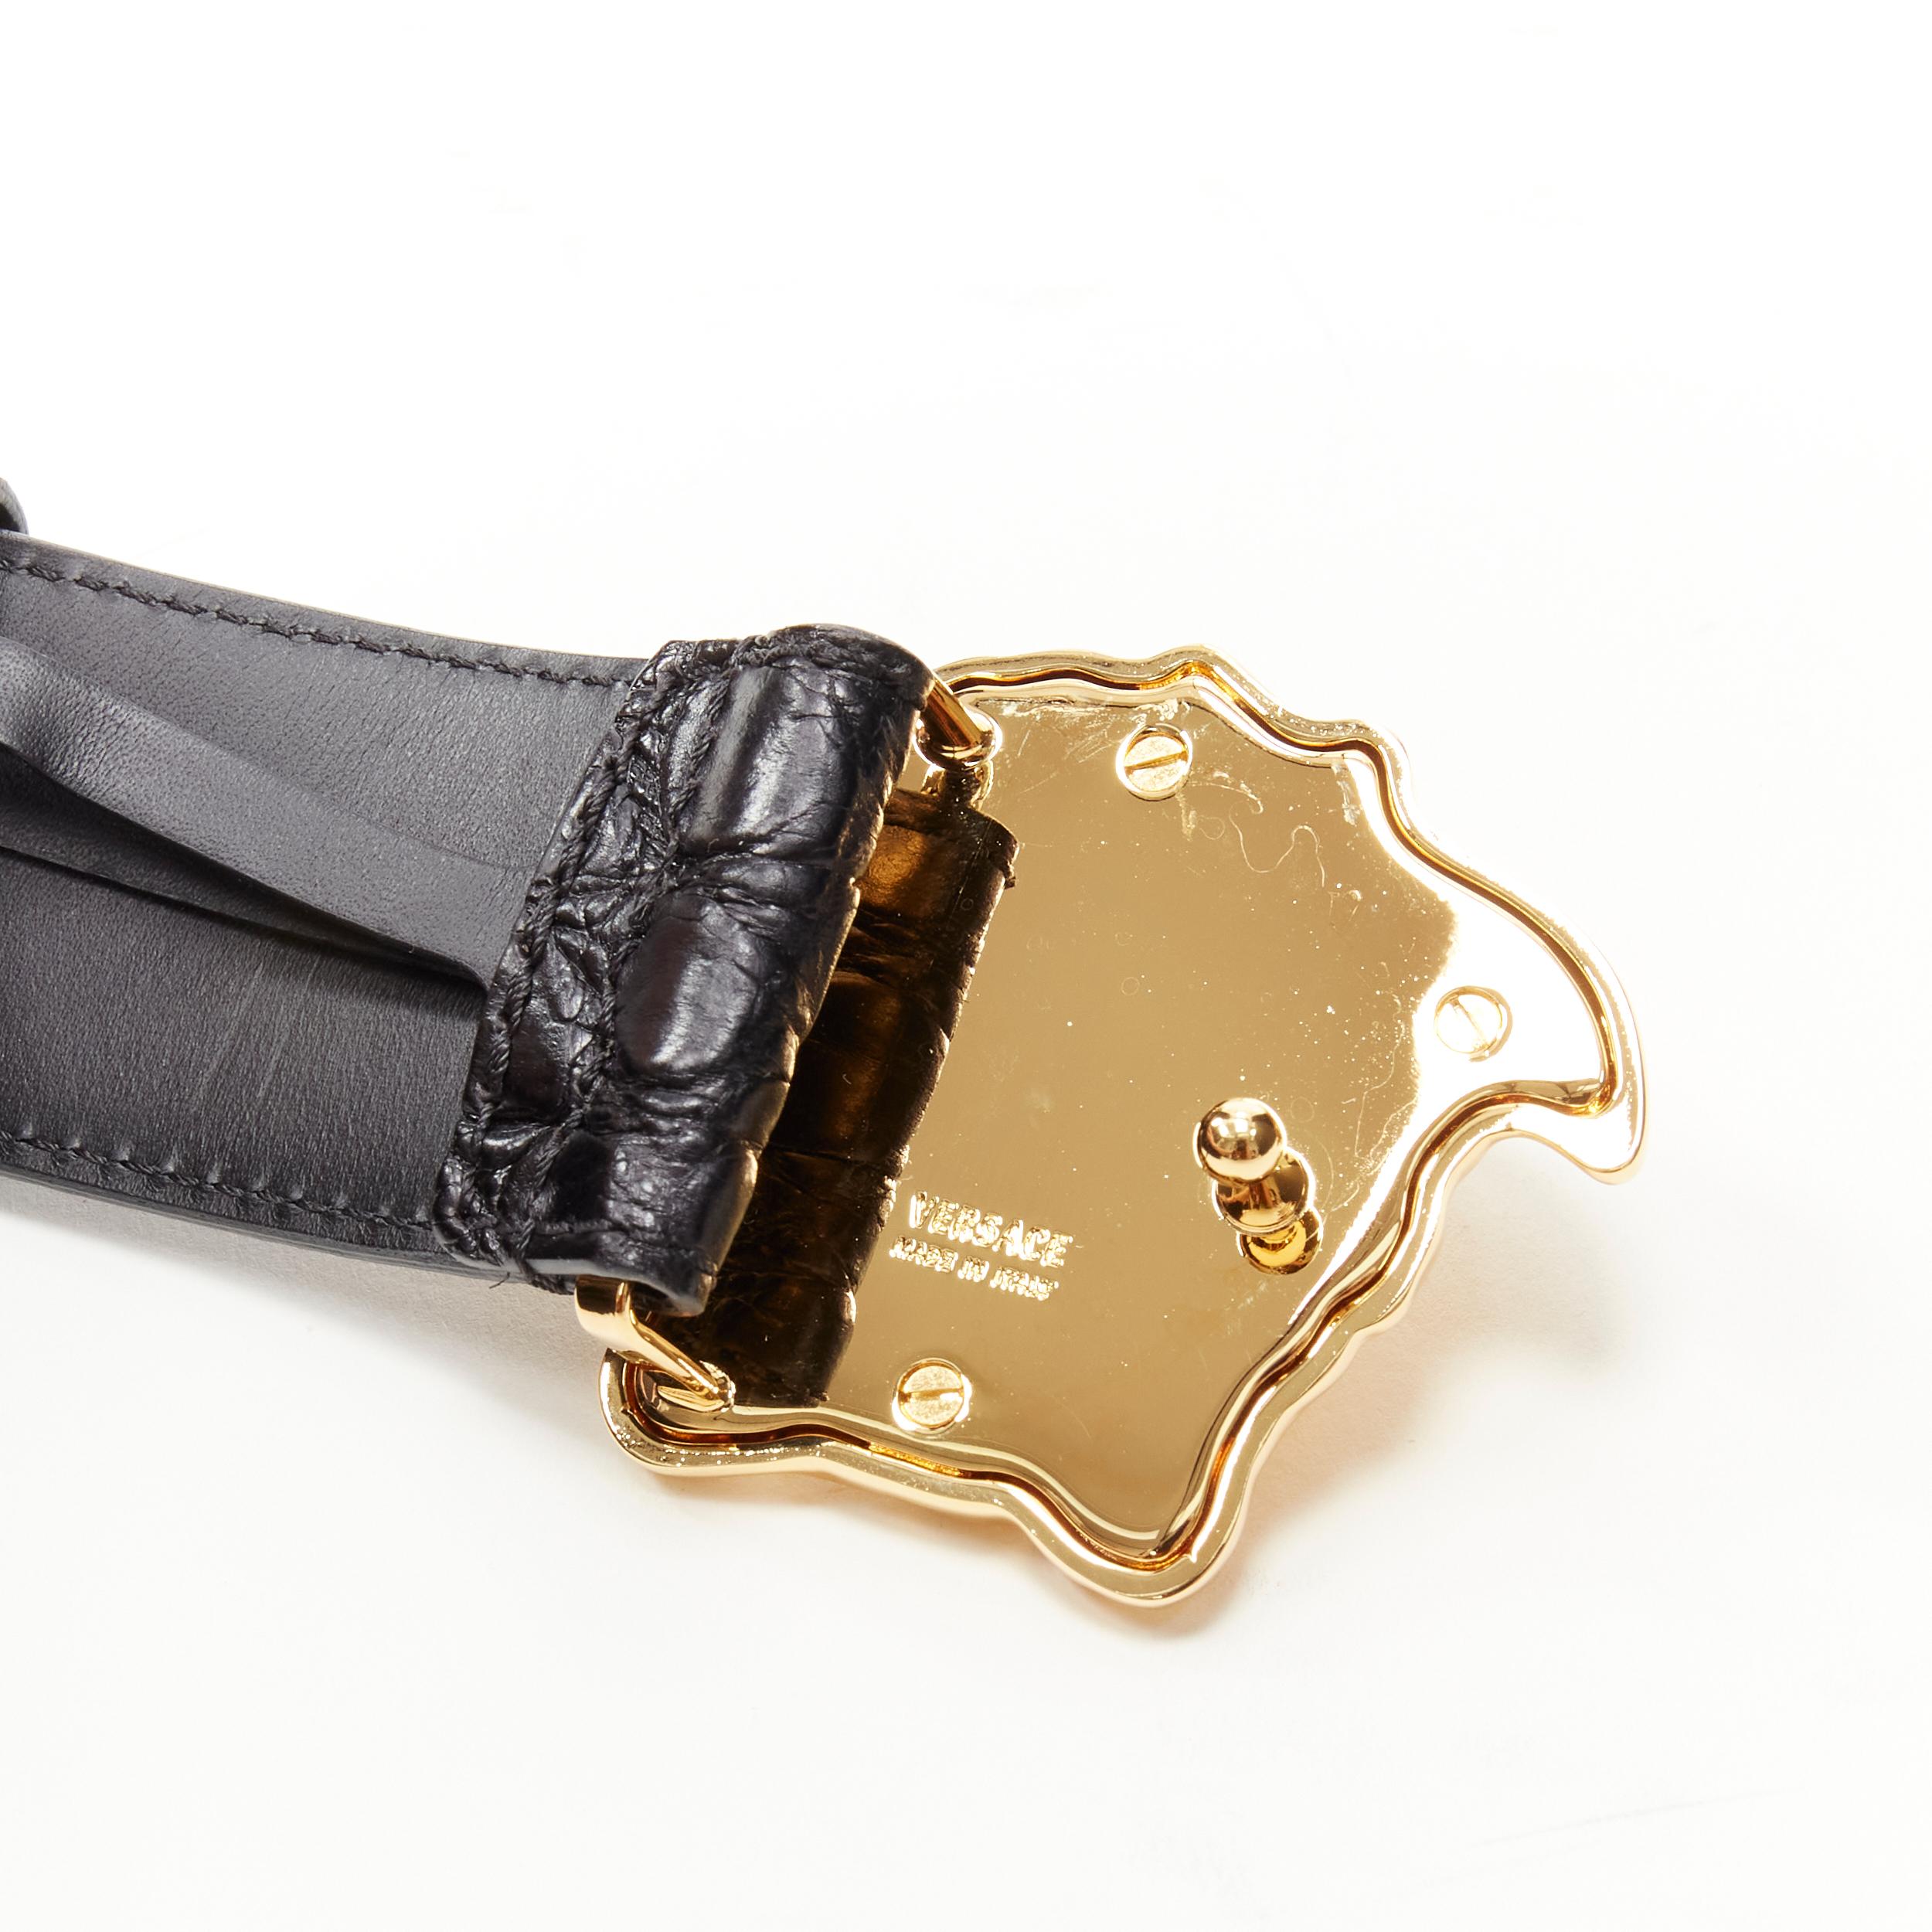 new VERSACE $1200 La Medusa gold buckle black croc leather belt 115cm 44-48